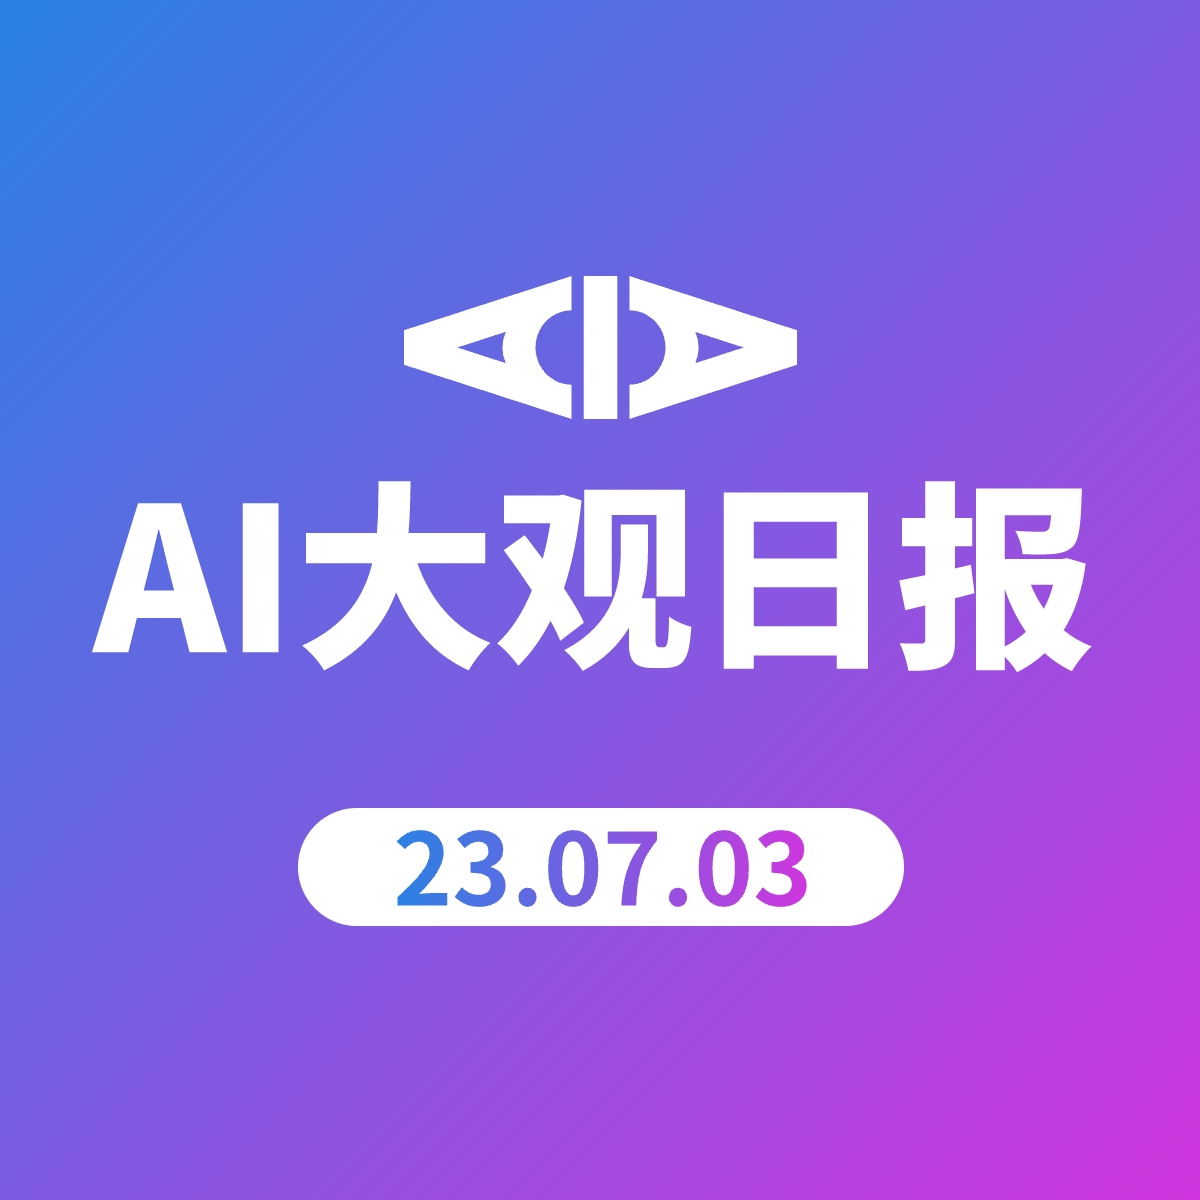 AI大观日报 | 23.07.03